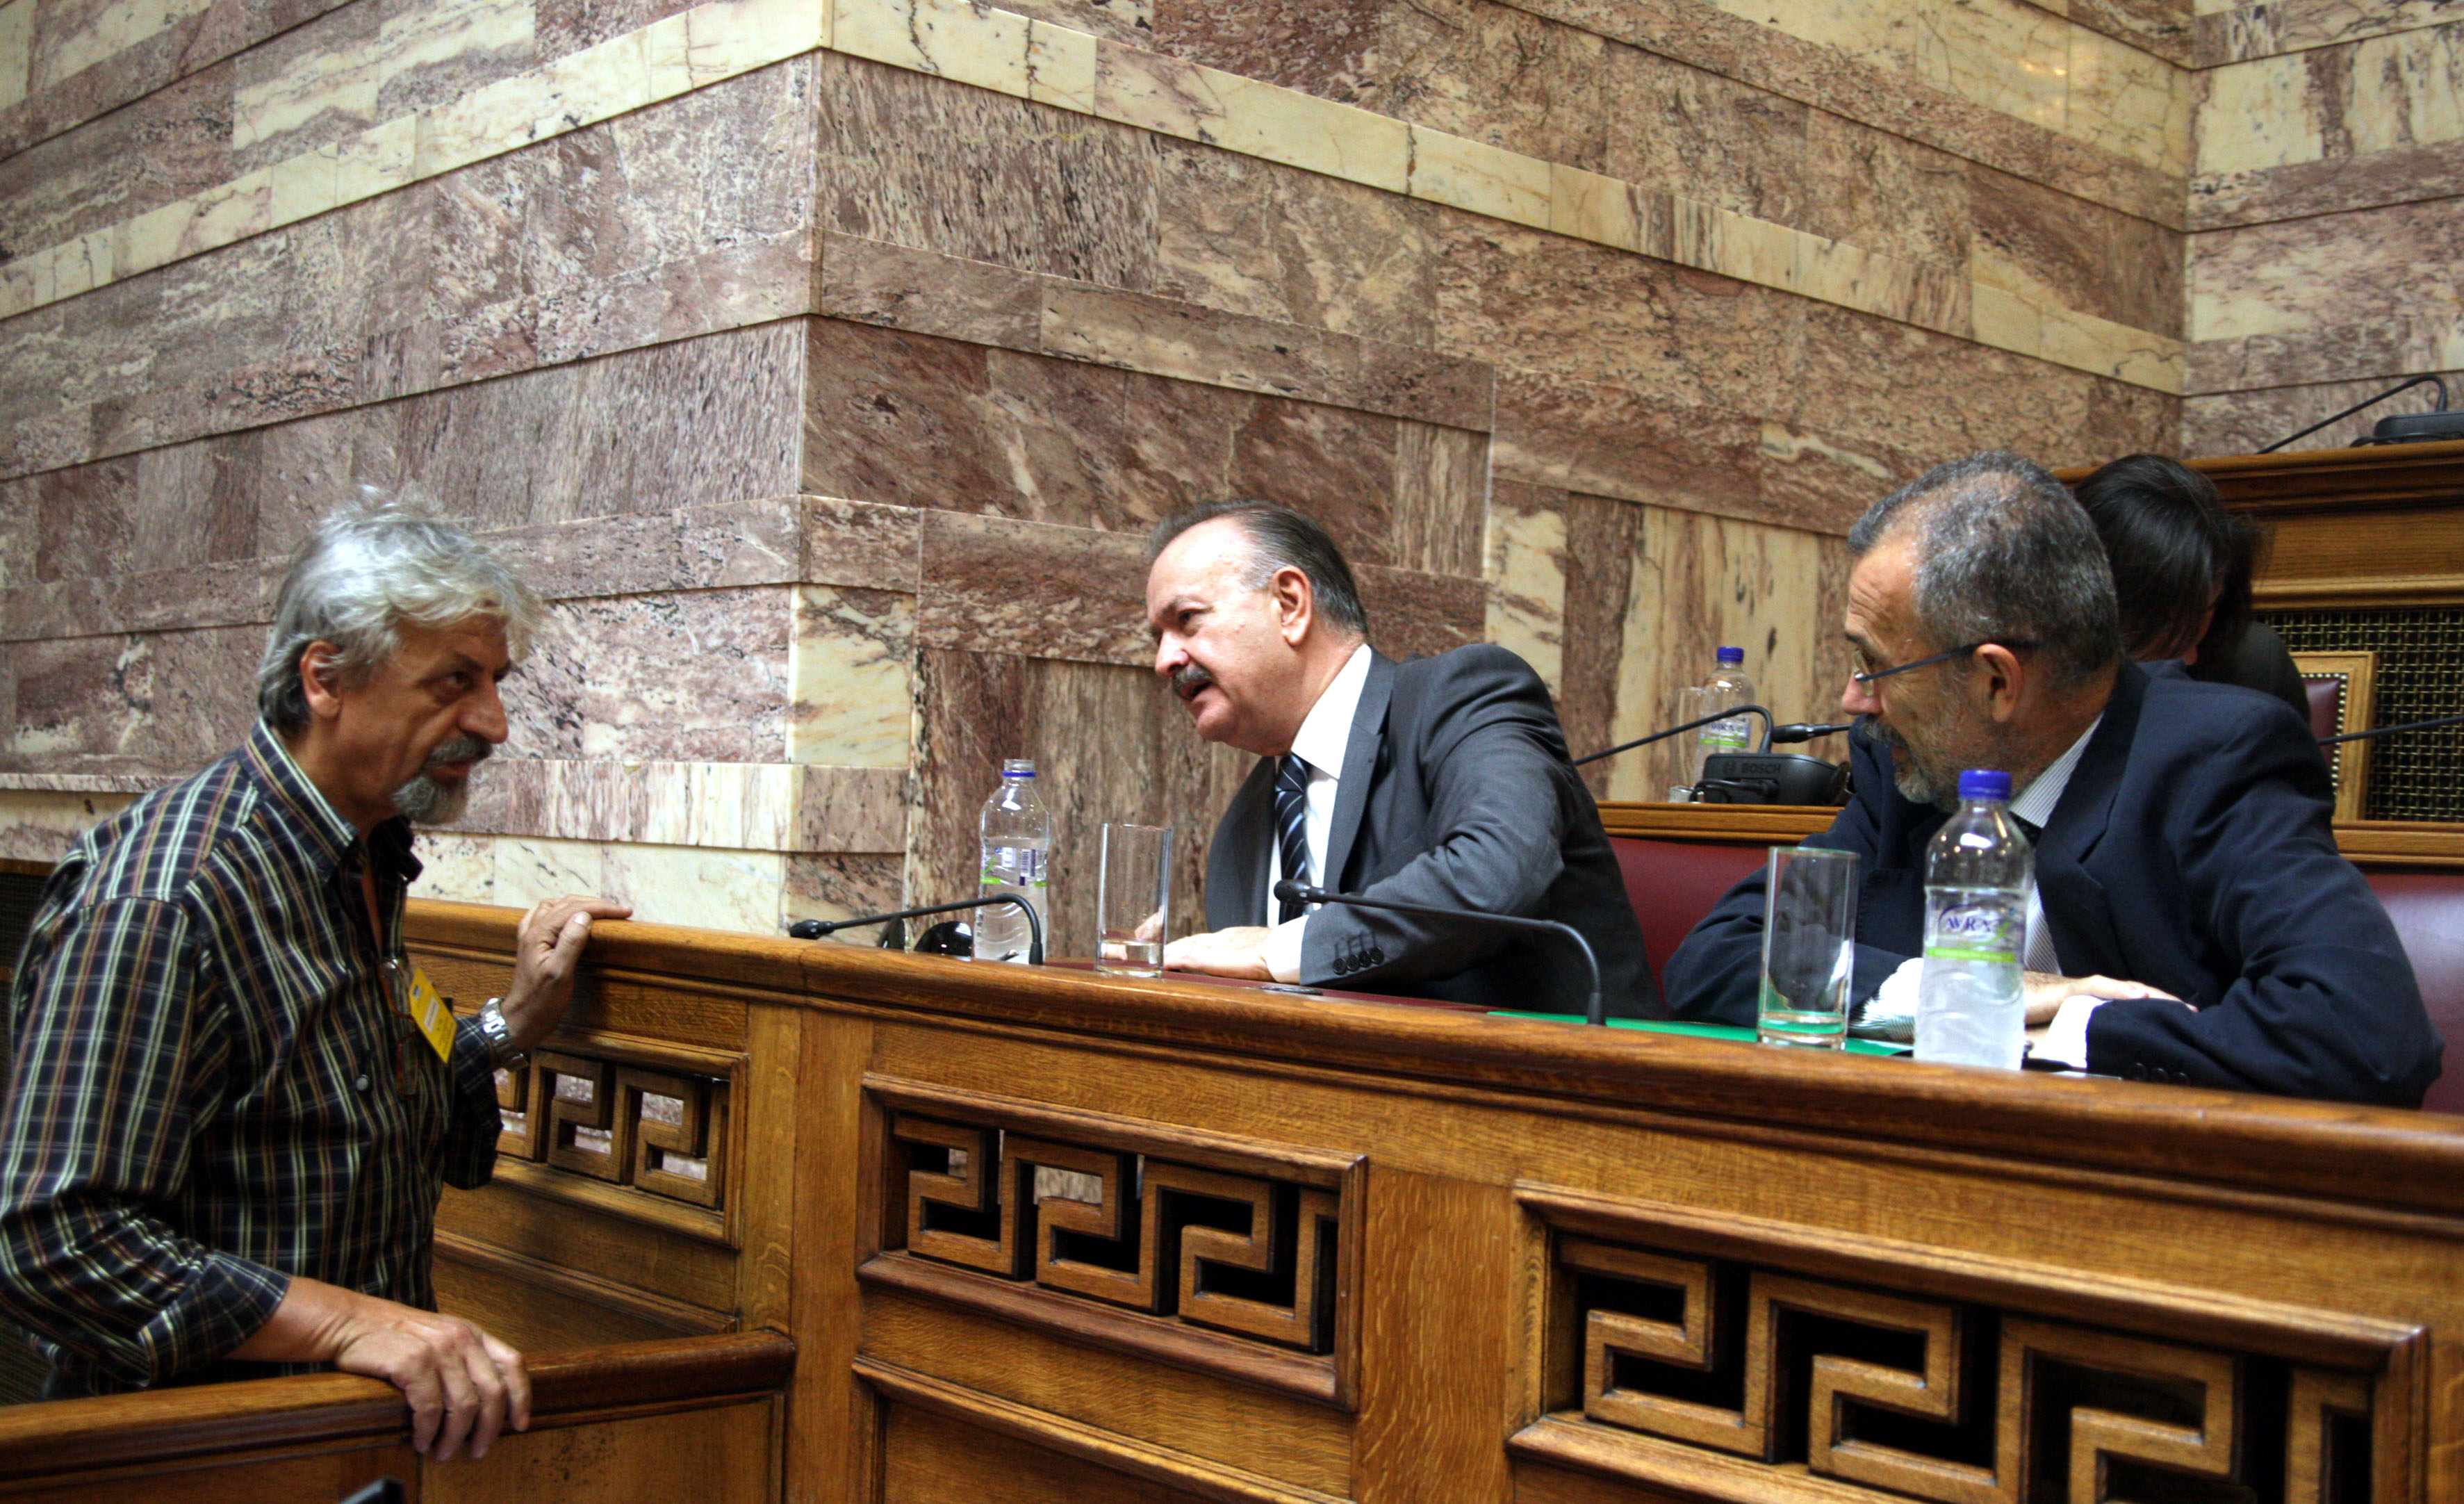 Ο κ. Καλφαγιαννης σε στιγμιότυπο με τον Πρόεδρο της Επιτροπής και τον υφυπουργό Παντελή Καψή ΦΩΤΟ EUROKINISSI